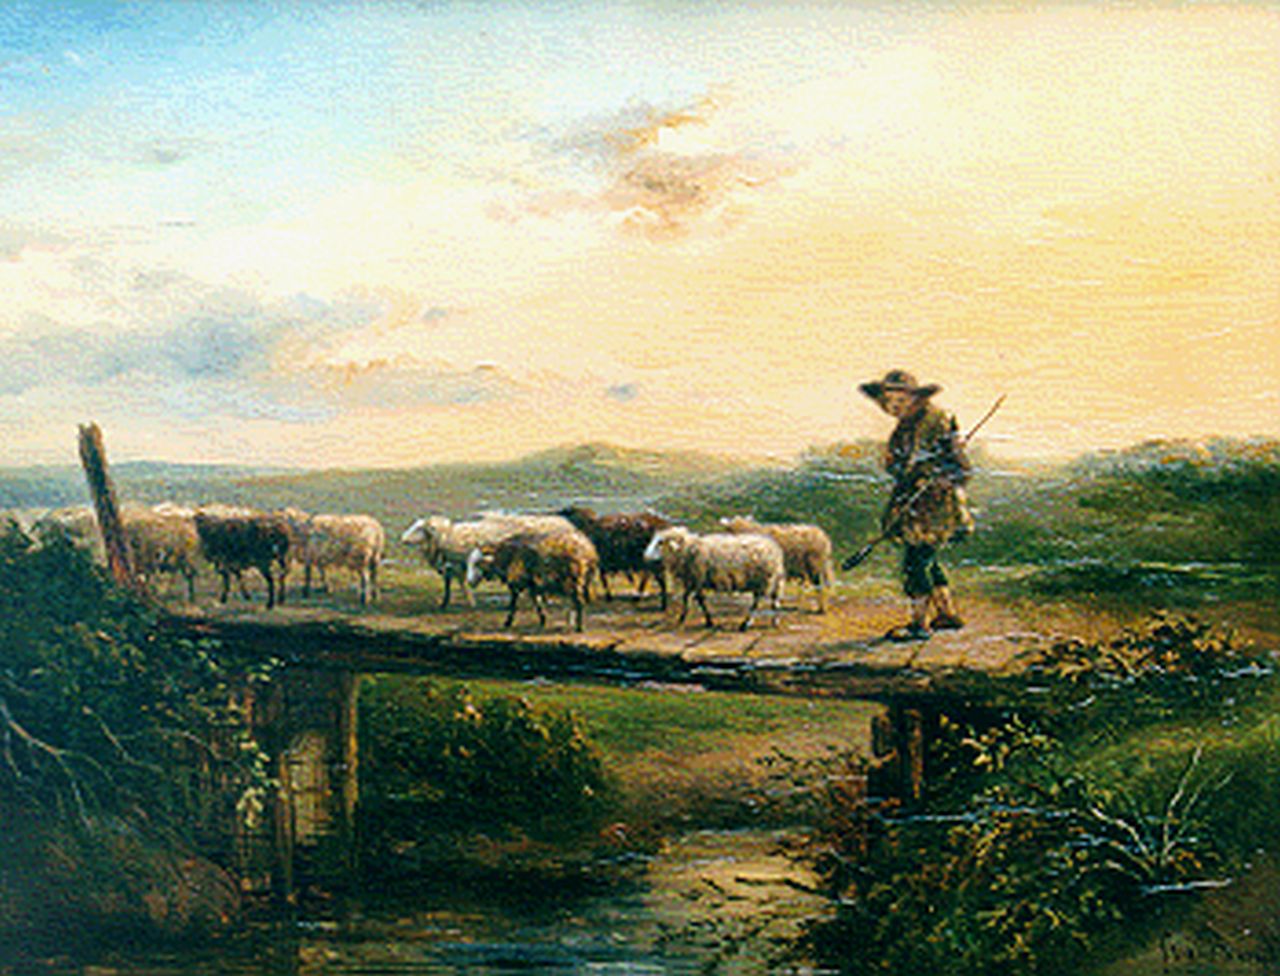 Berg S. van den | Simon van den Berg, A shepherd with his flock, oil on panel 24.0 x 31.3 cm, signed l.r.